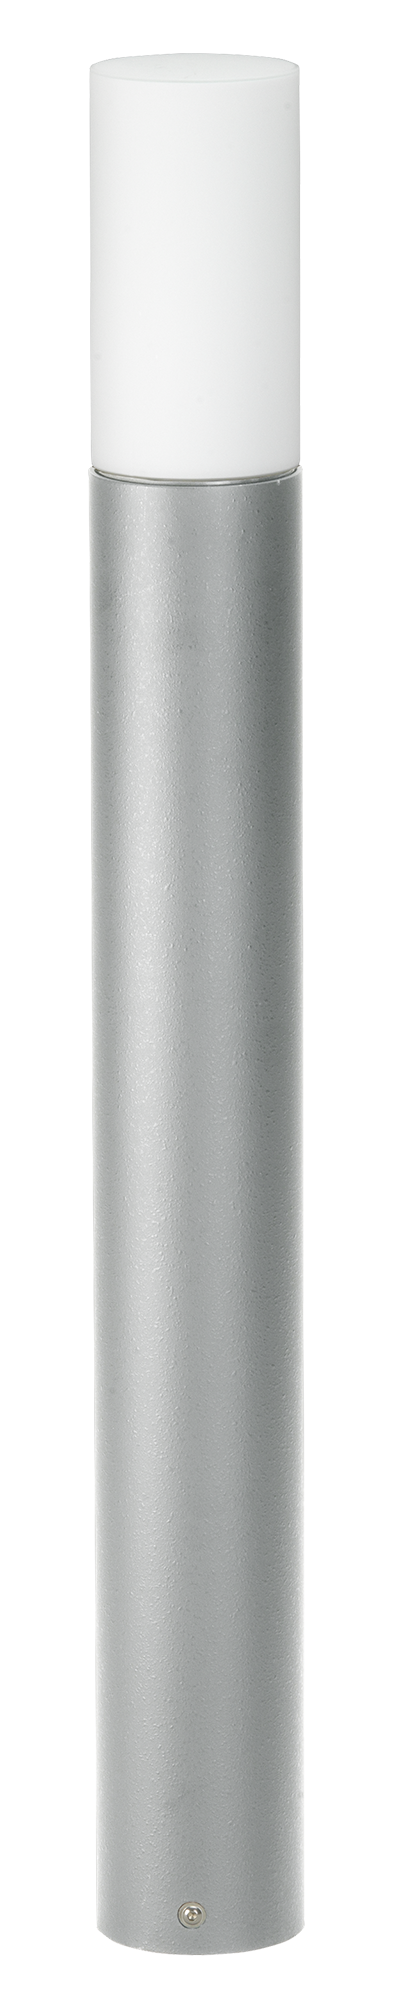 Bodenleuchten, Pollerleuchten, Kandelaber & Bodenlampen für außen von Albert Leuchten Pollerleuchte Typ Nr. 2277 692277